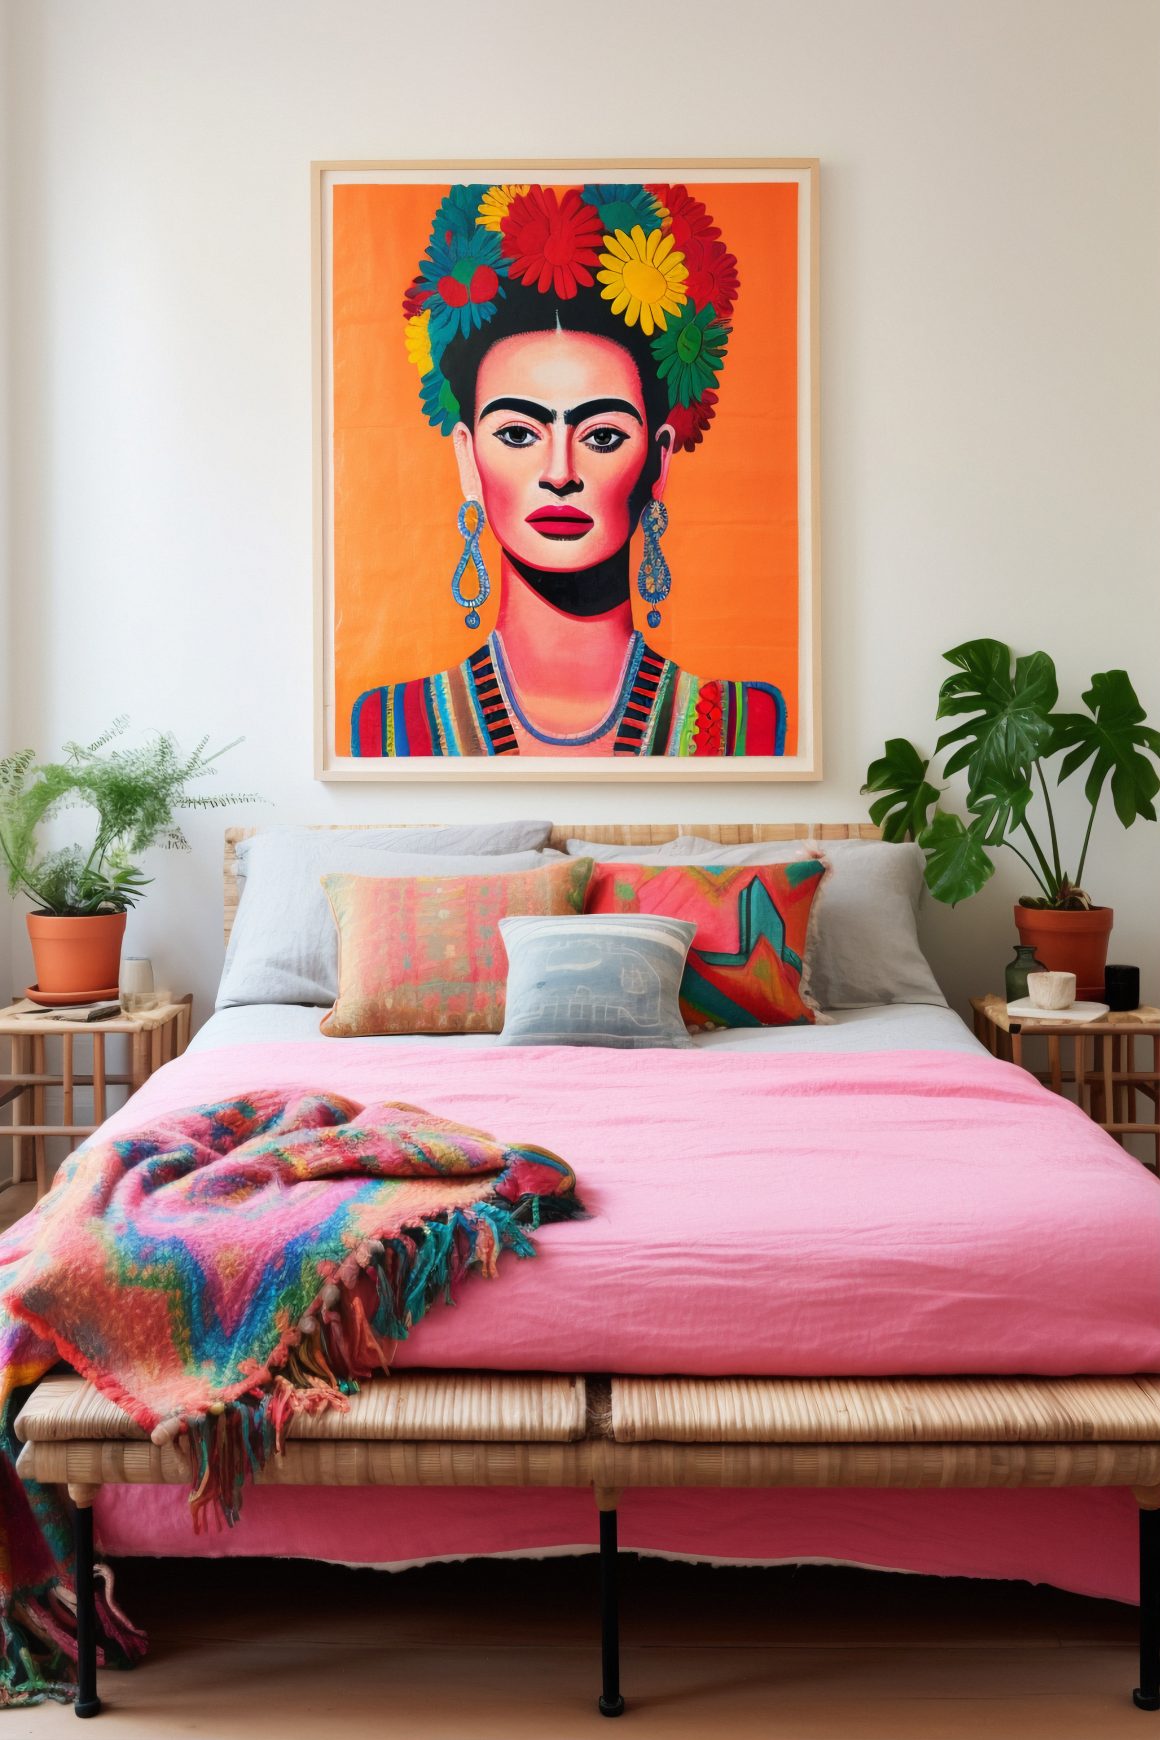 chambre avec une décoration tropicale, portrait coloré au-dessus du lit, plantes en pots